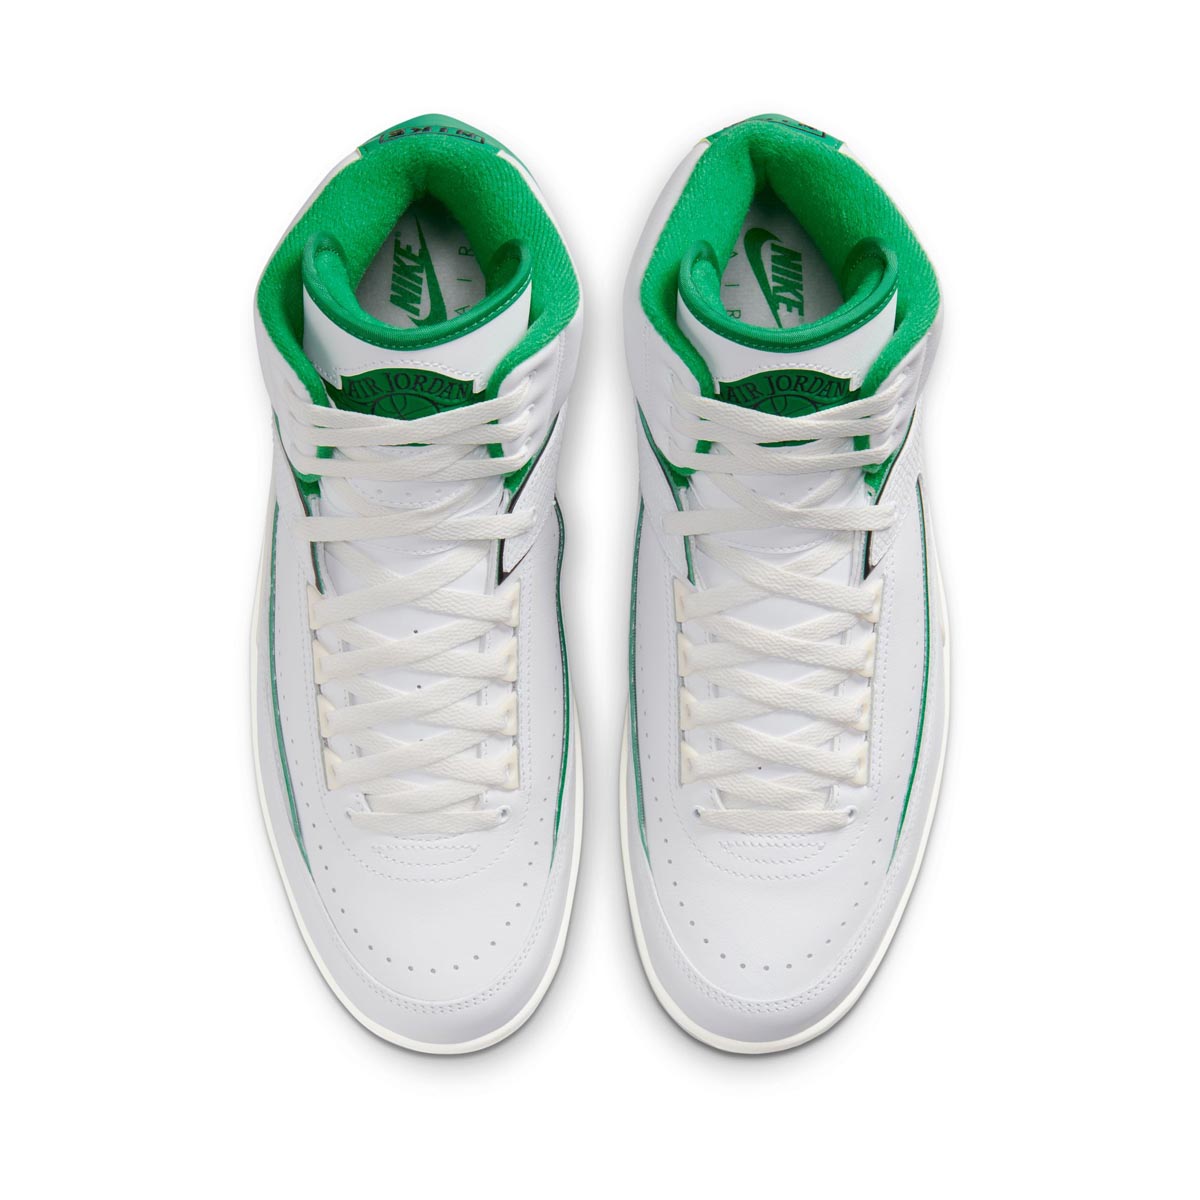 Nike Air Jordan 11 Retro Low Bred 528895-012 Men's Shoes